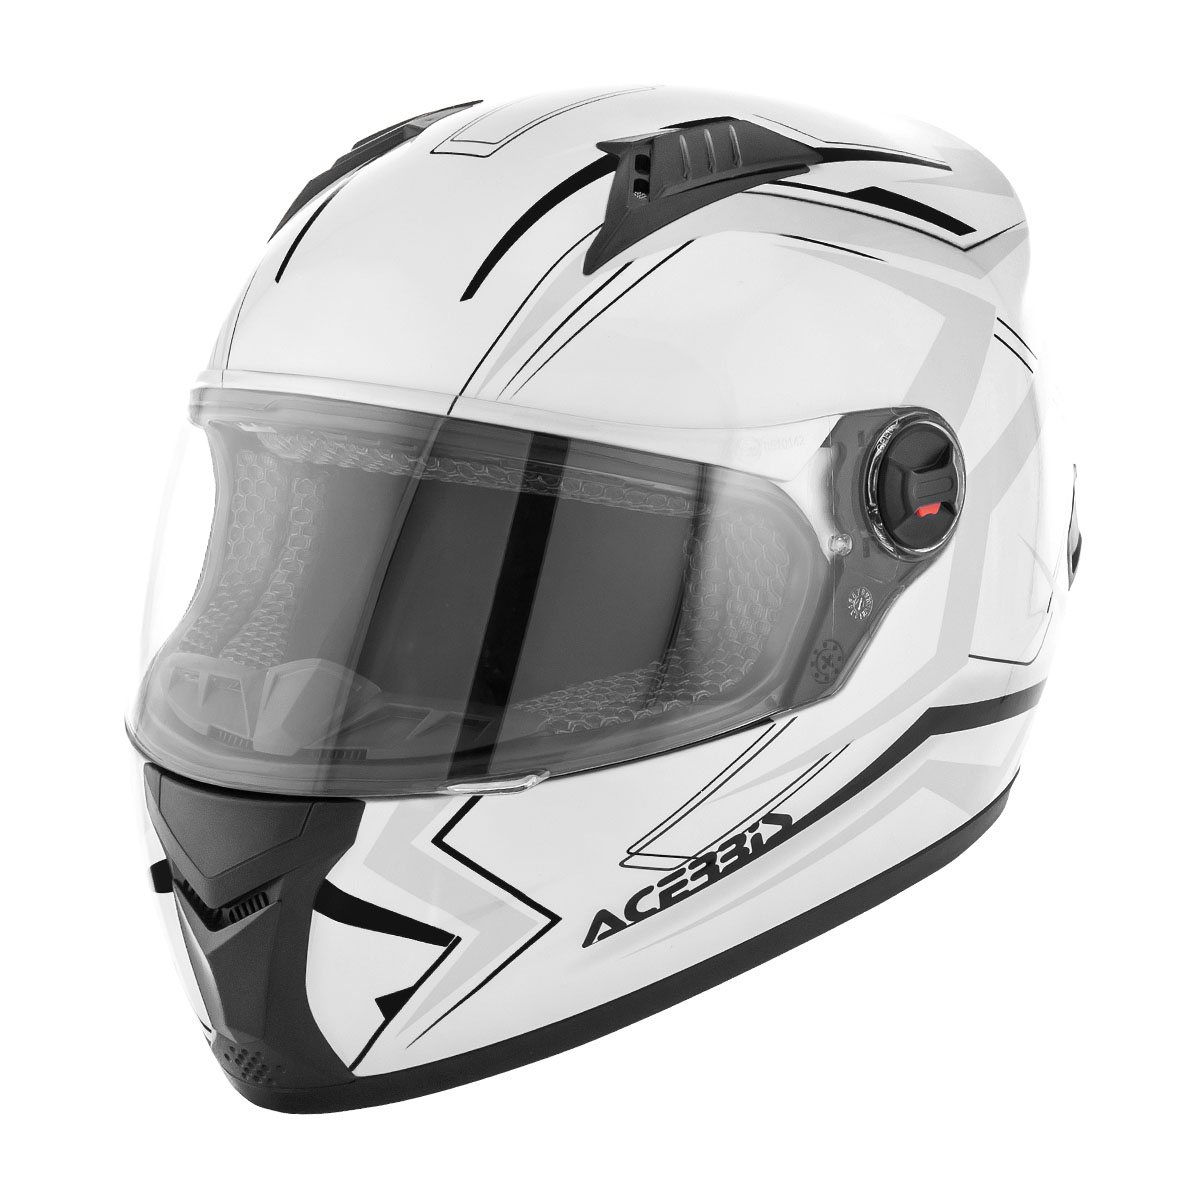 Acerbis Helmet Full Face FS-807 White/Black